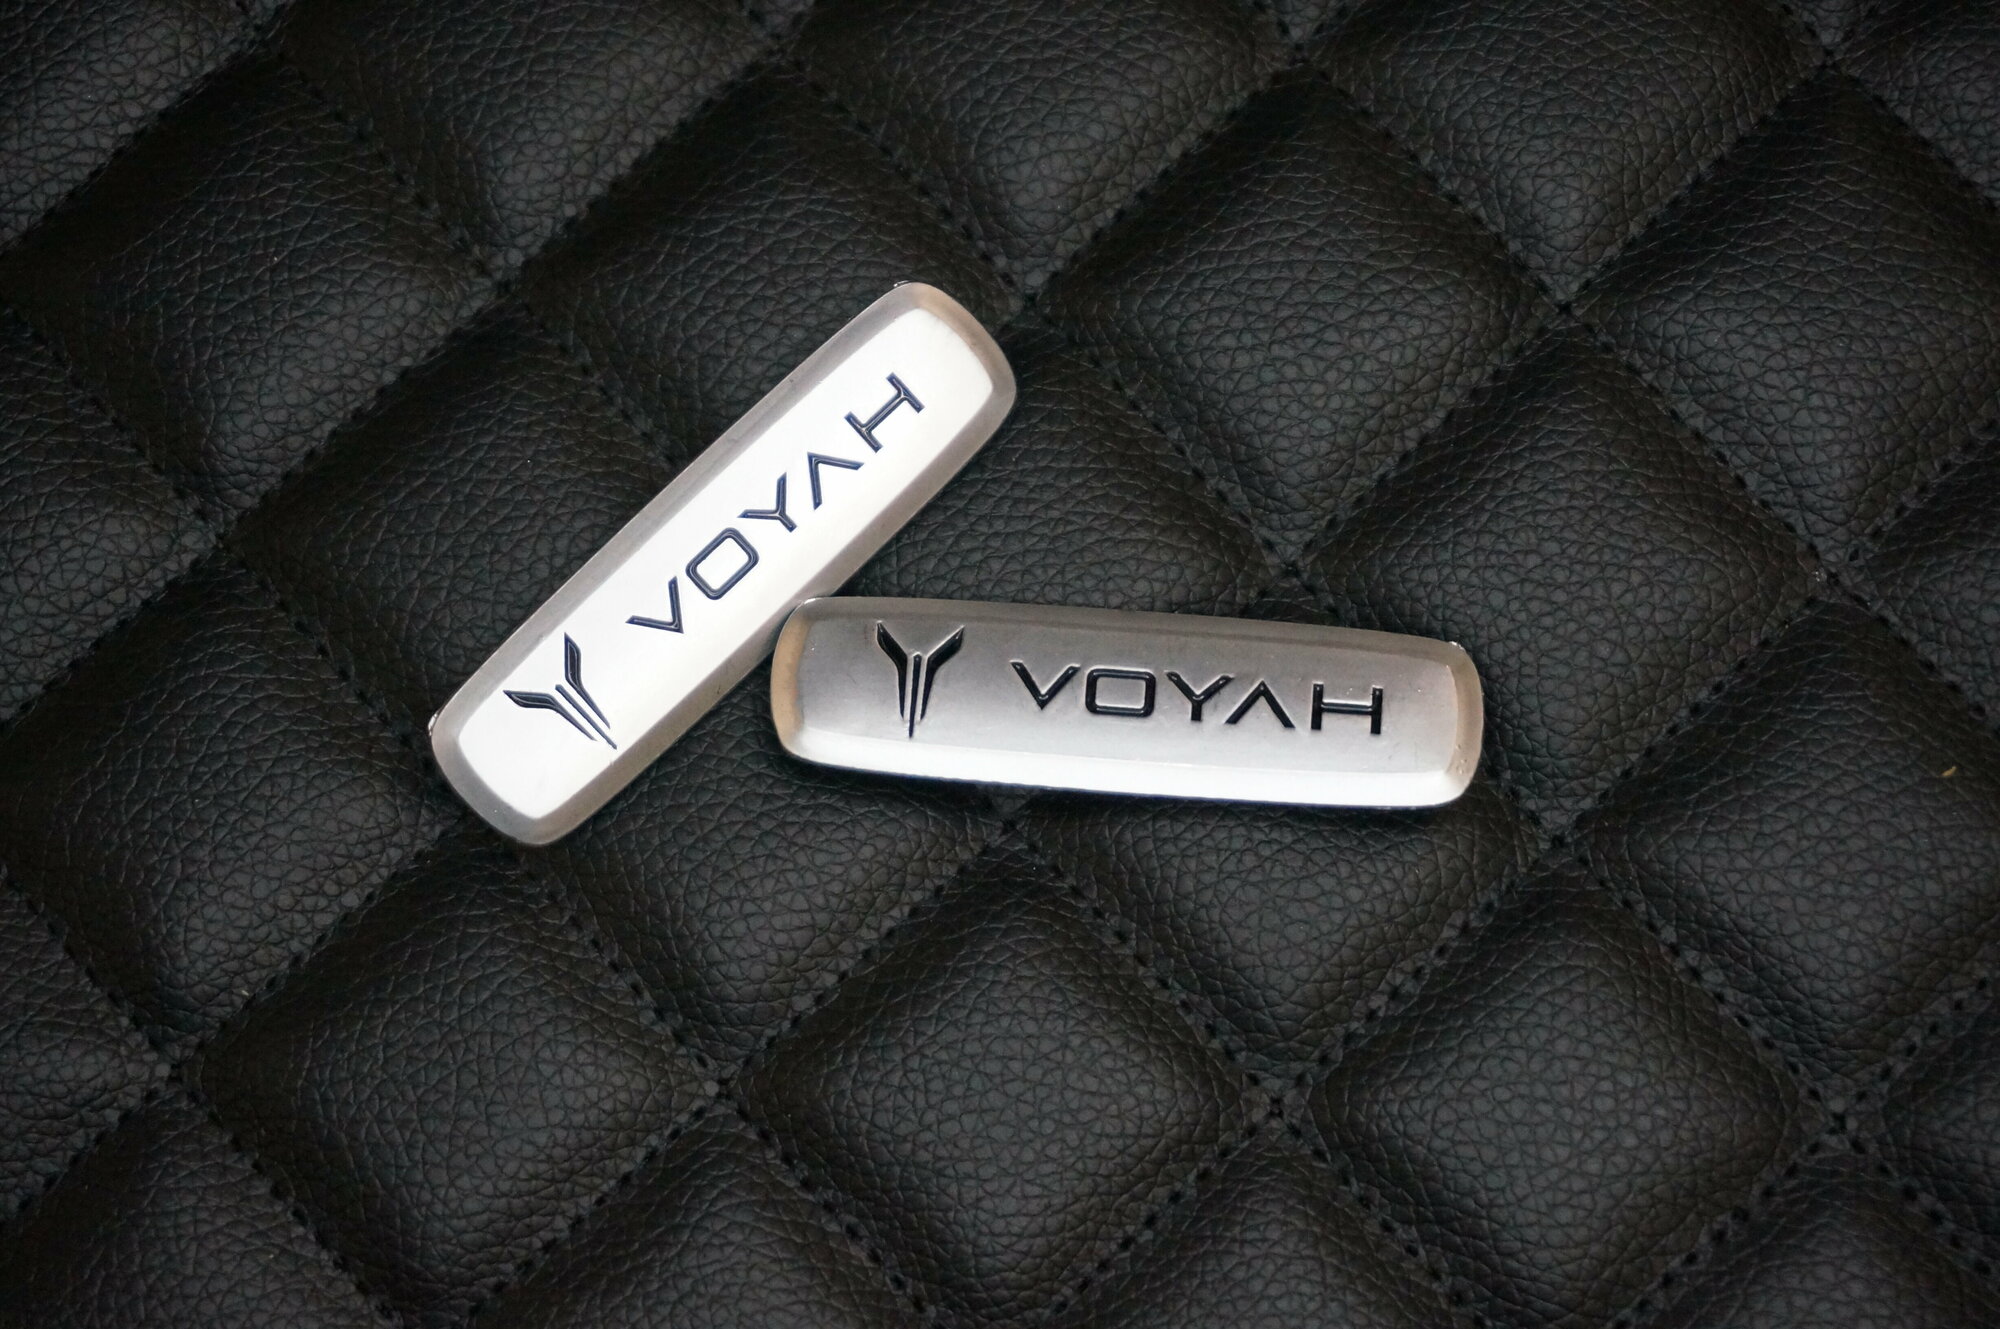 Логотип (шильдик) на автомобильный коврик с маркой автомобиля Voyah / Воя